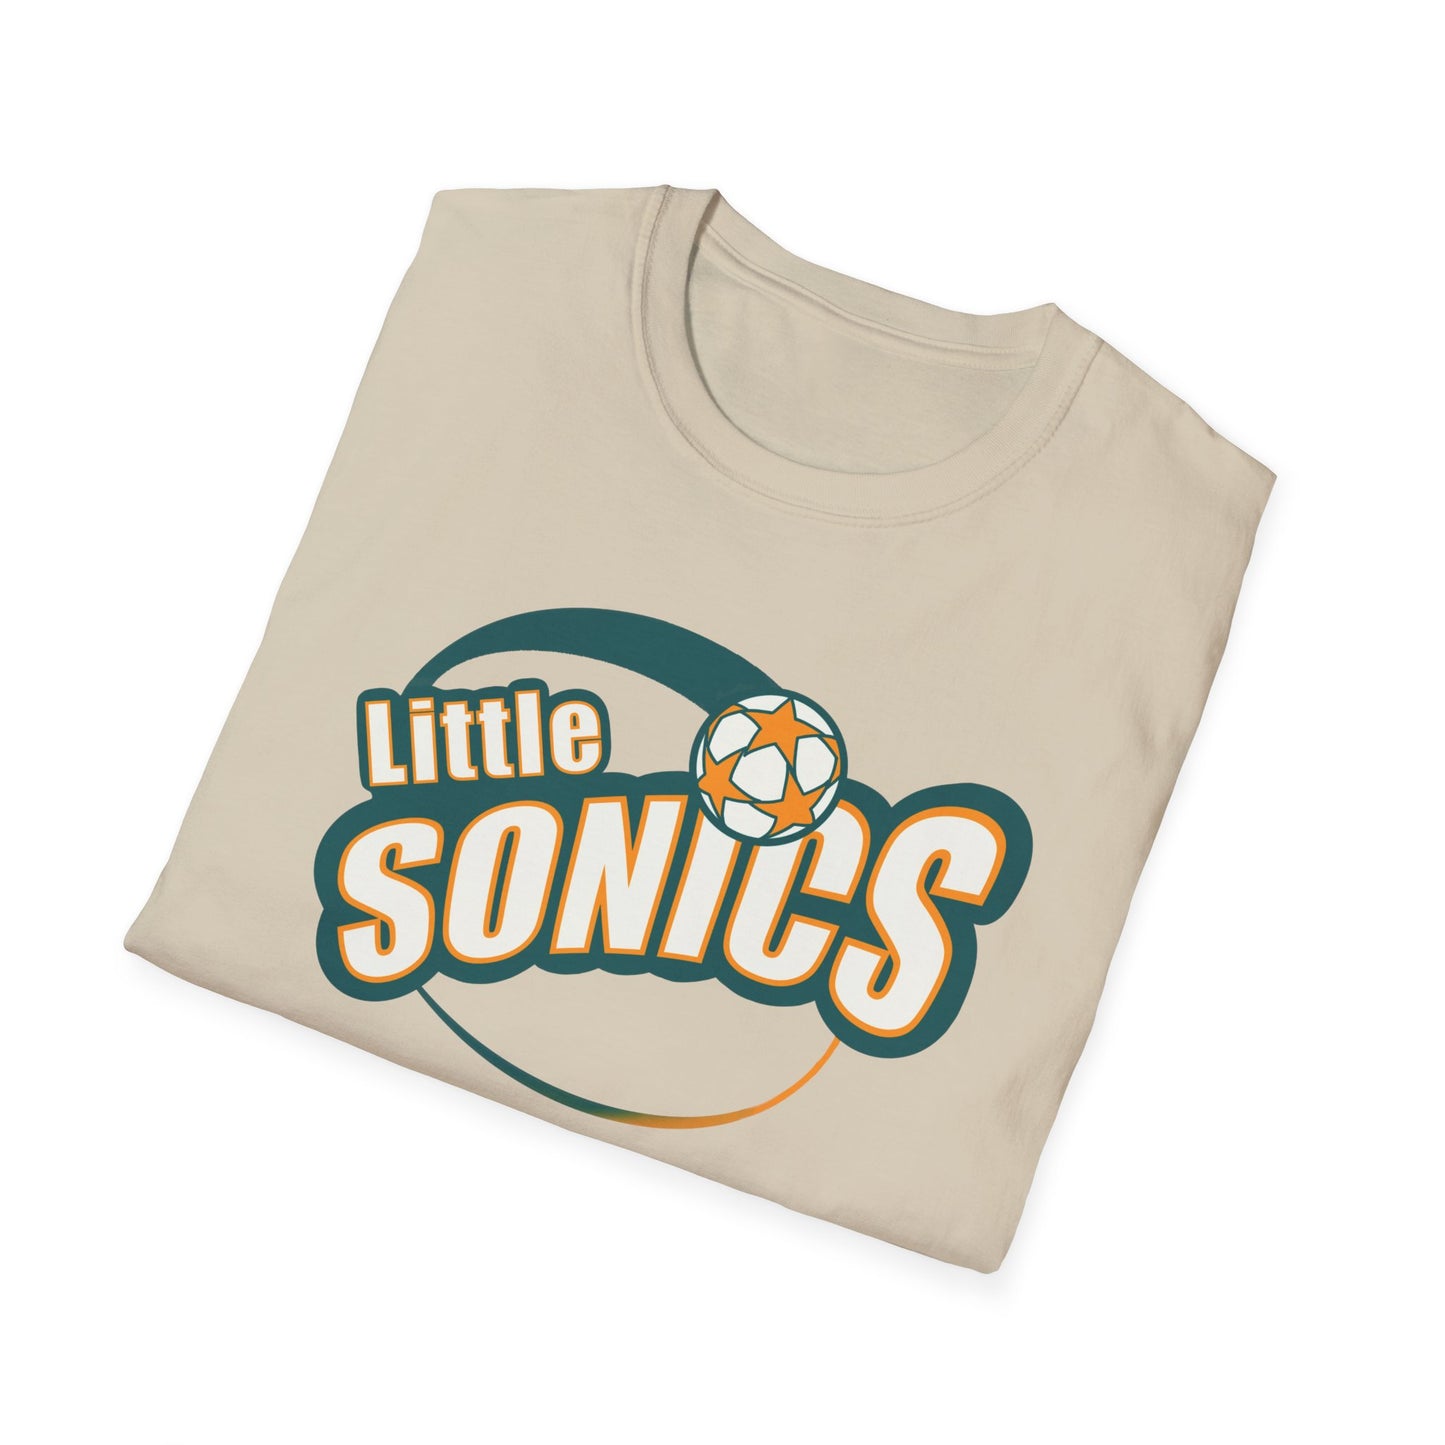 Little Sonics (Adult T-Shirt)